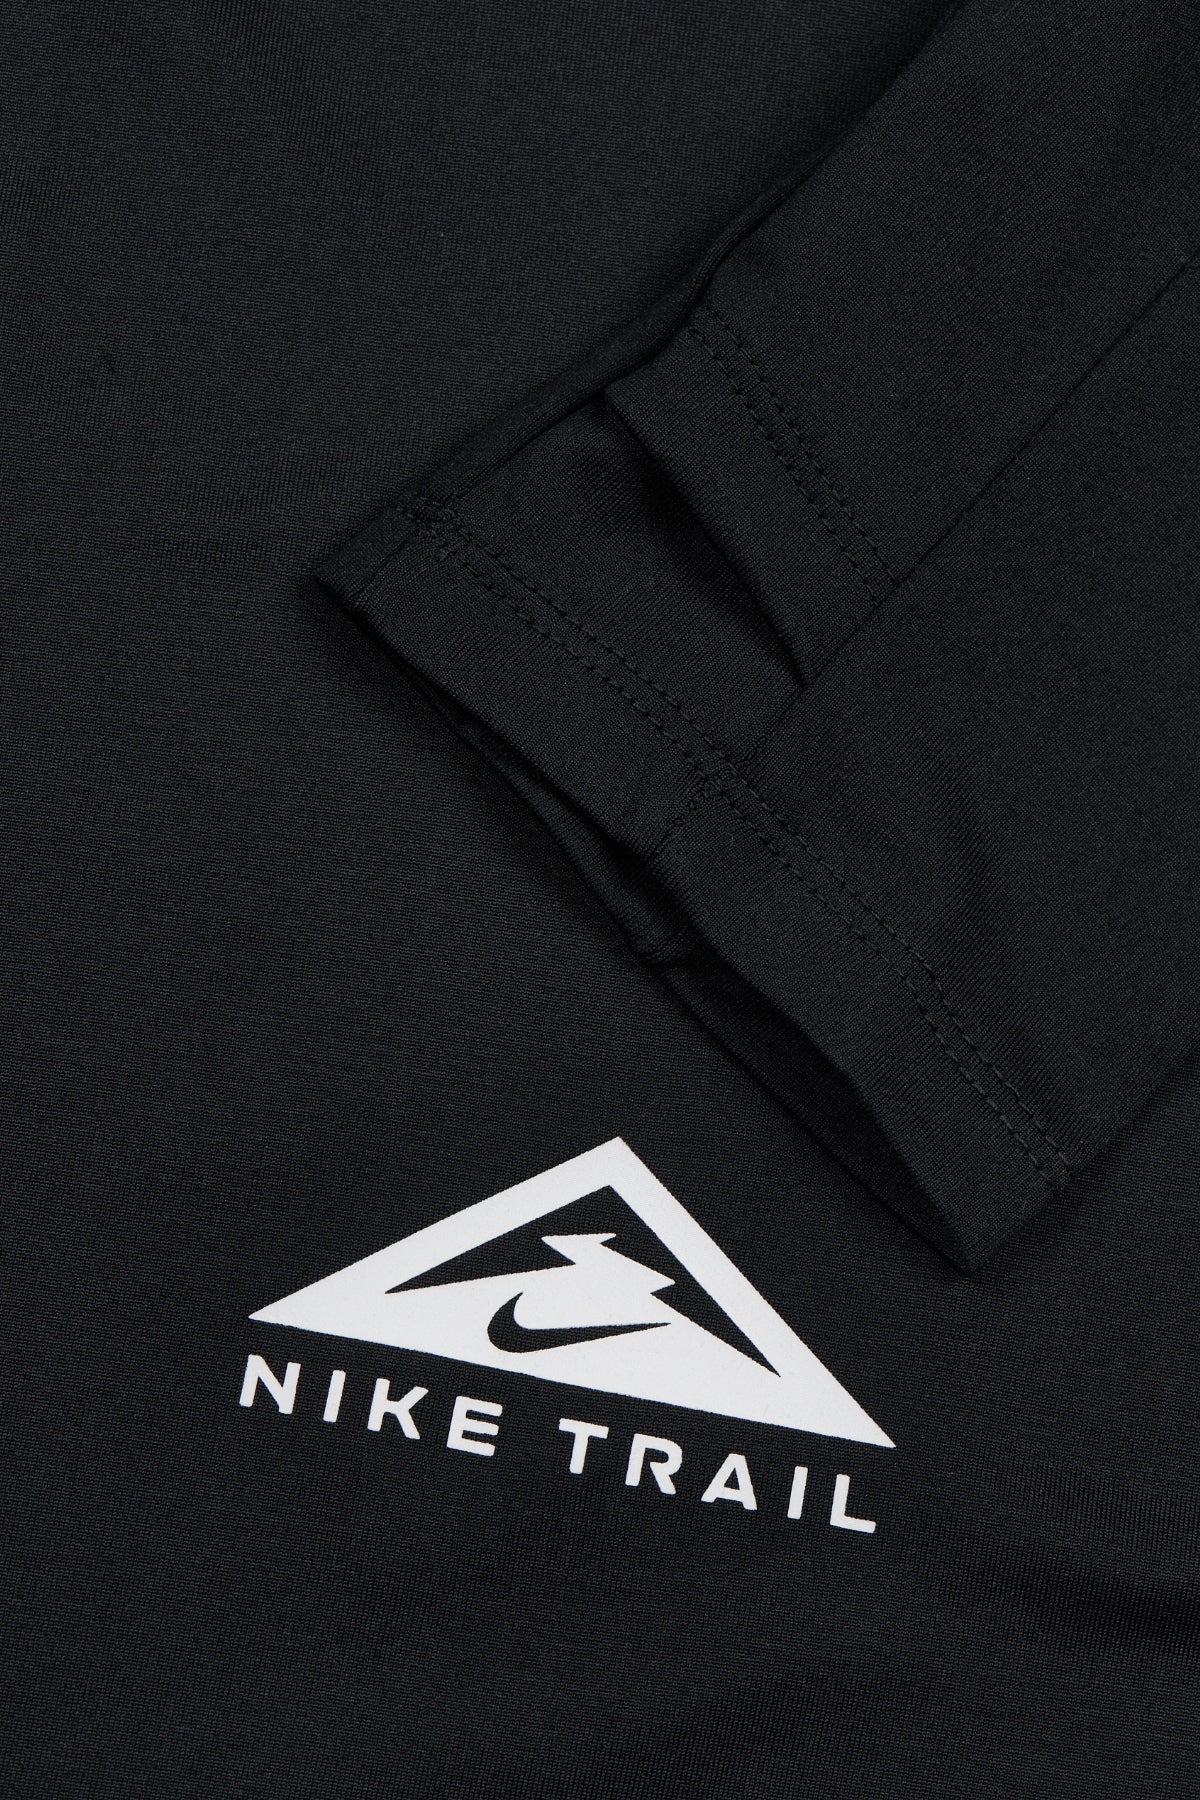 Nike TRAIL - Dri-FIT Trail Half-Zip